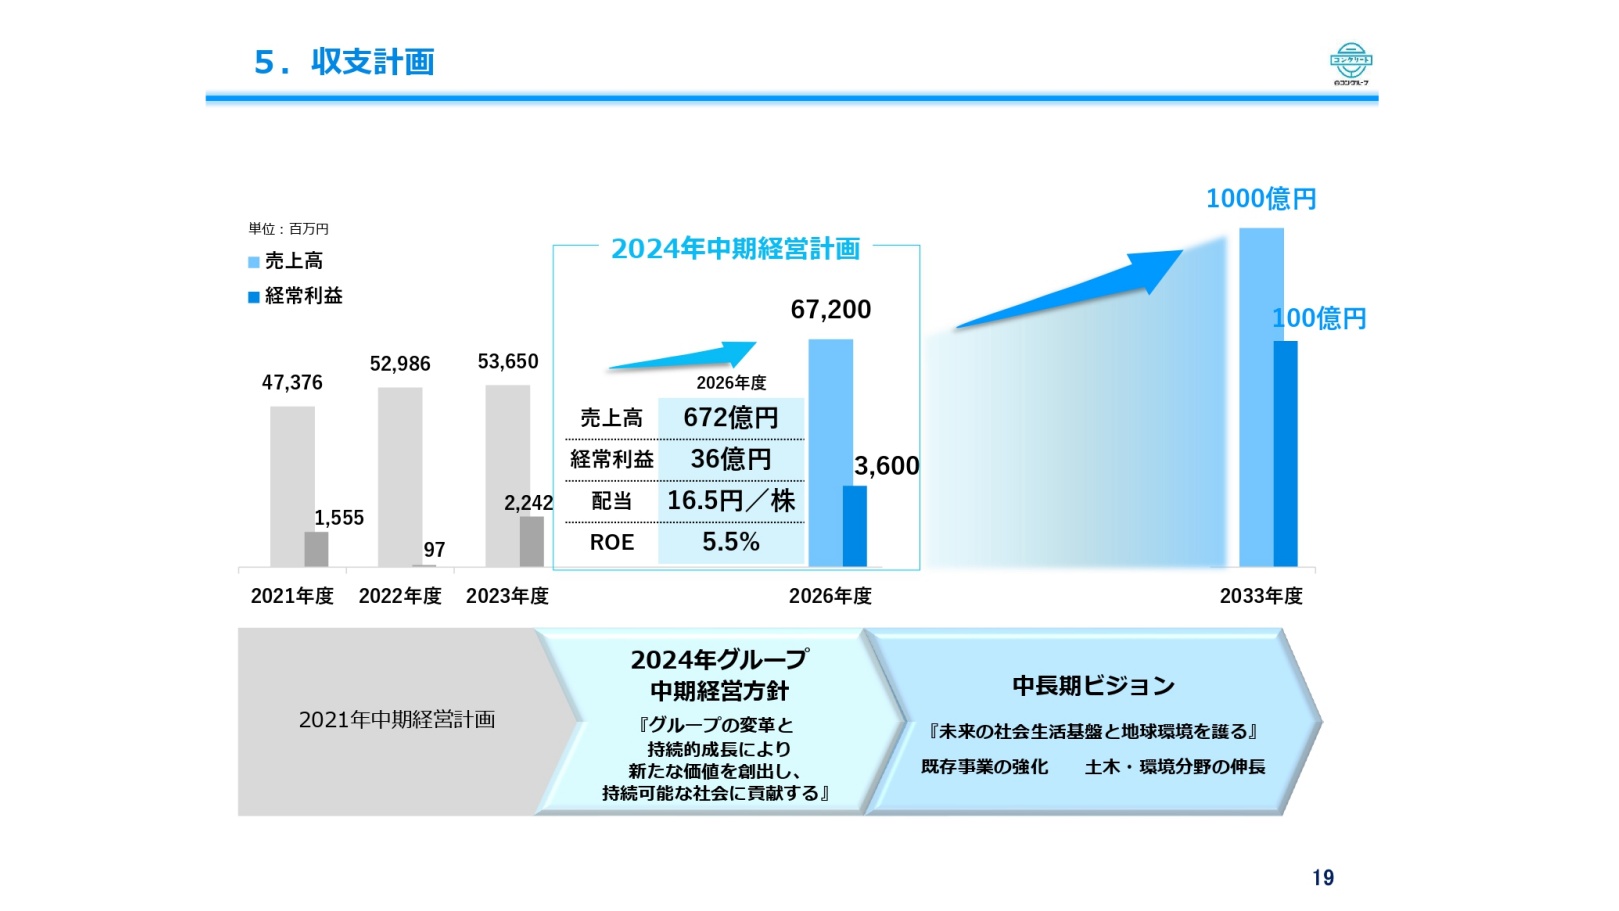 日本ヒューム（5262）の財務情報ならログミーFinance - ログミーファイナンス